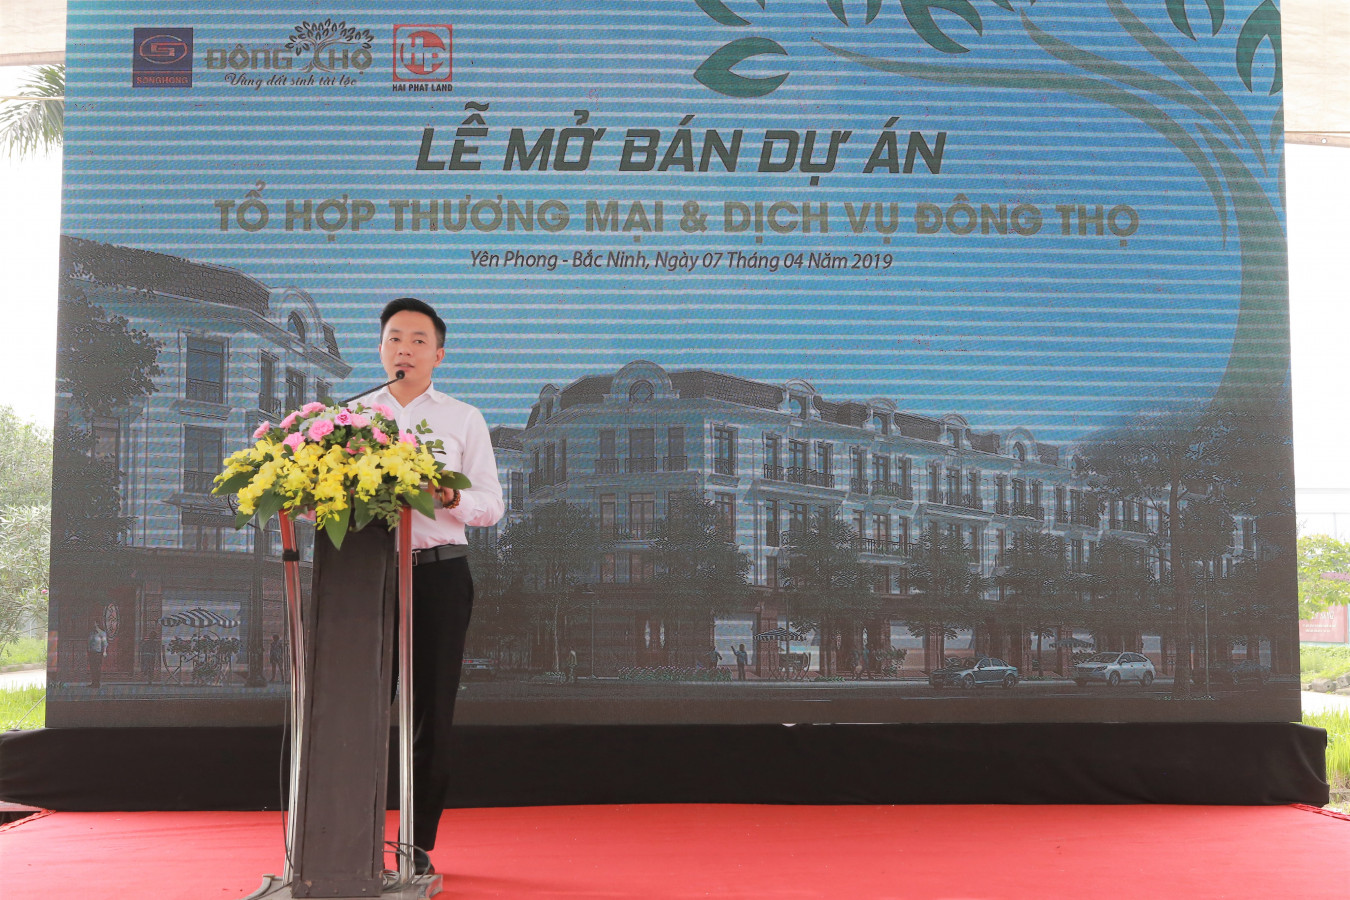 Hải Phát Land mở bán dự án đất nền Đông Thọ, Bắc Ninh